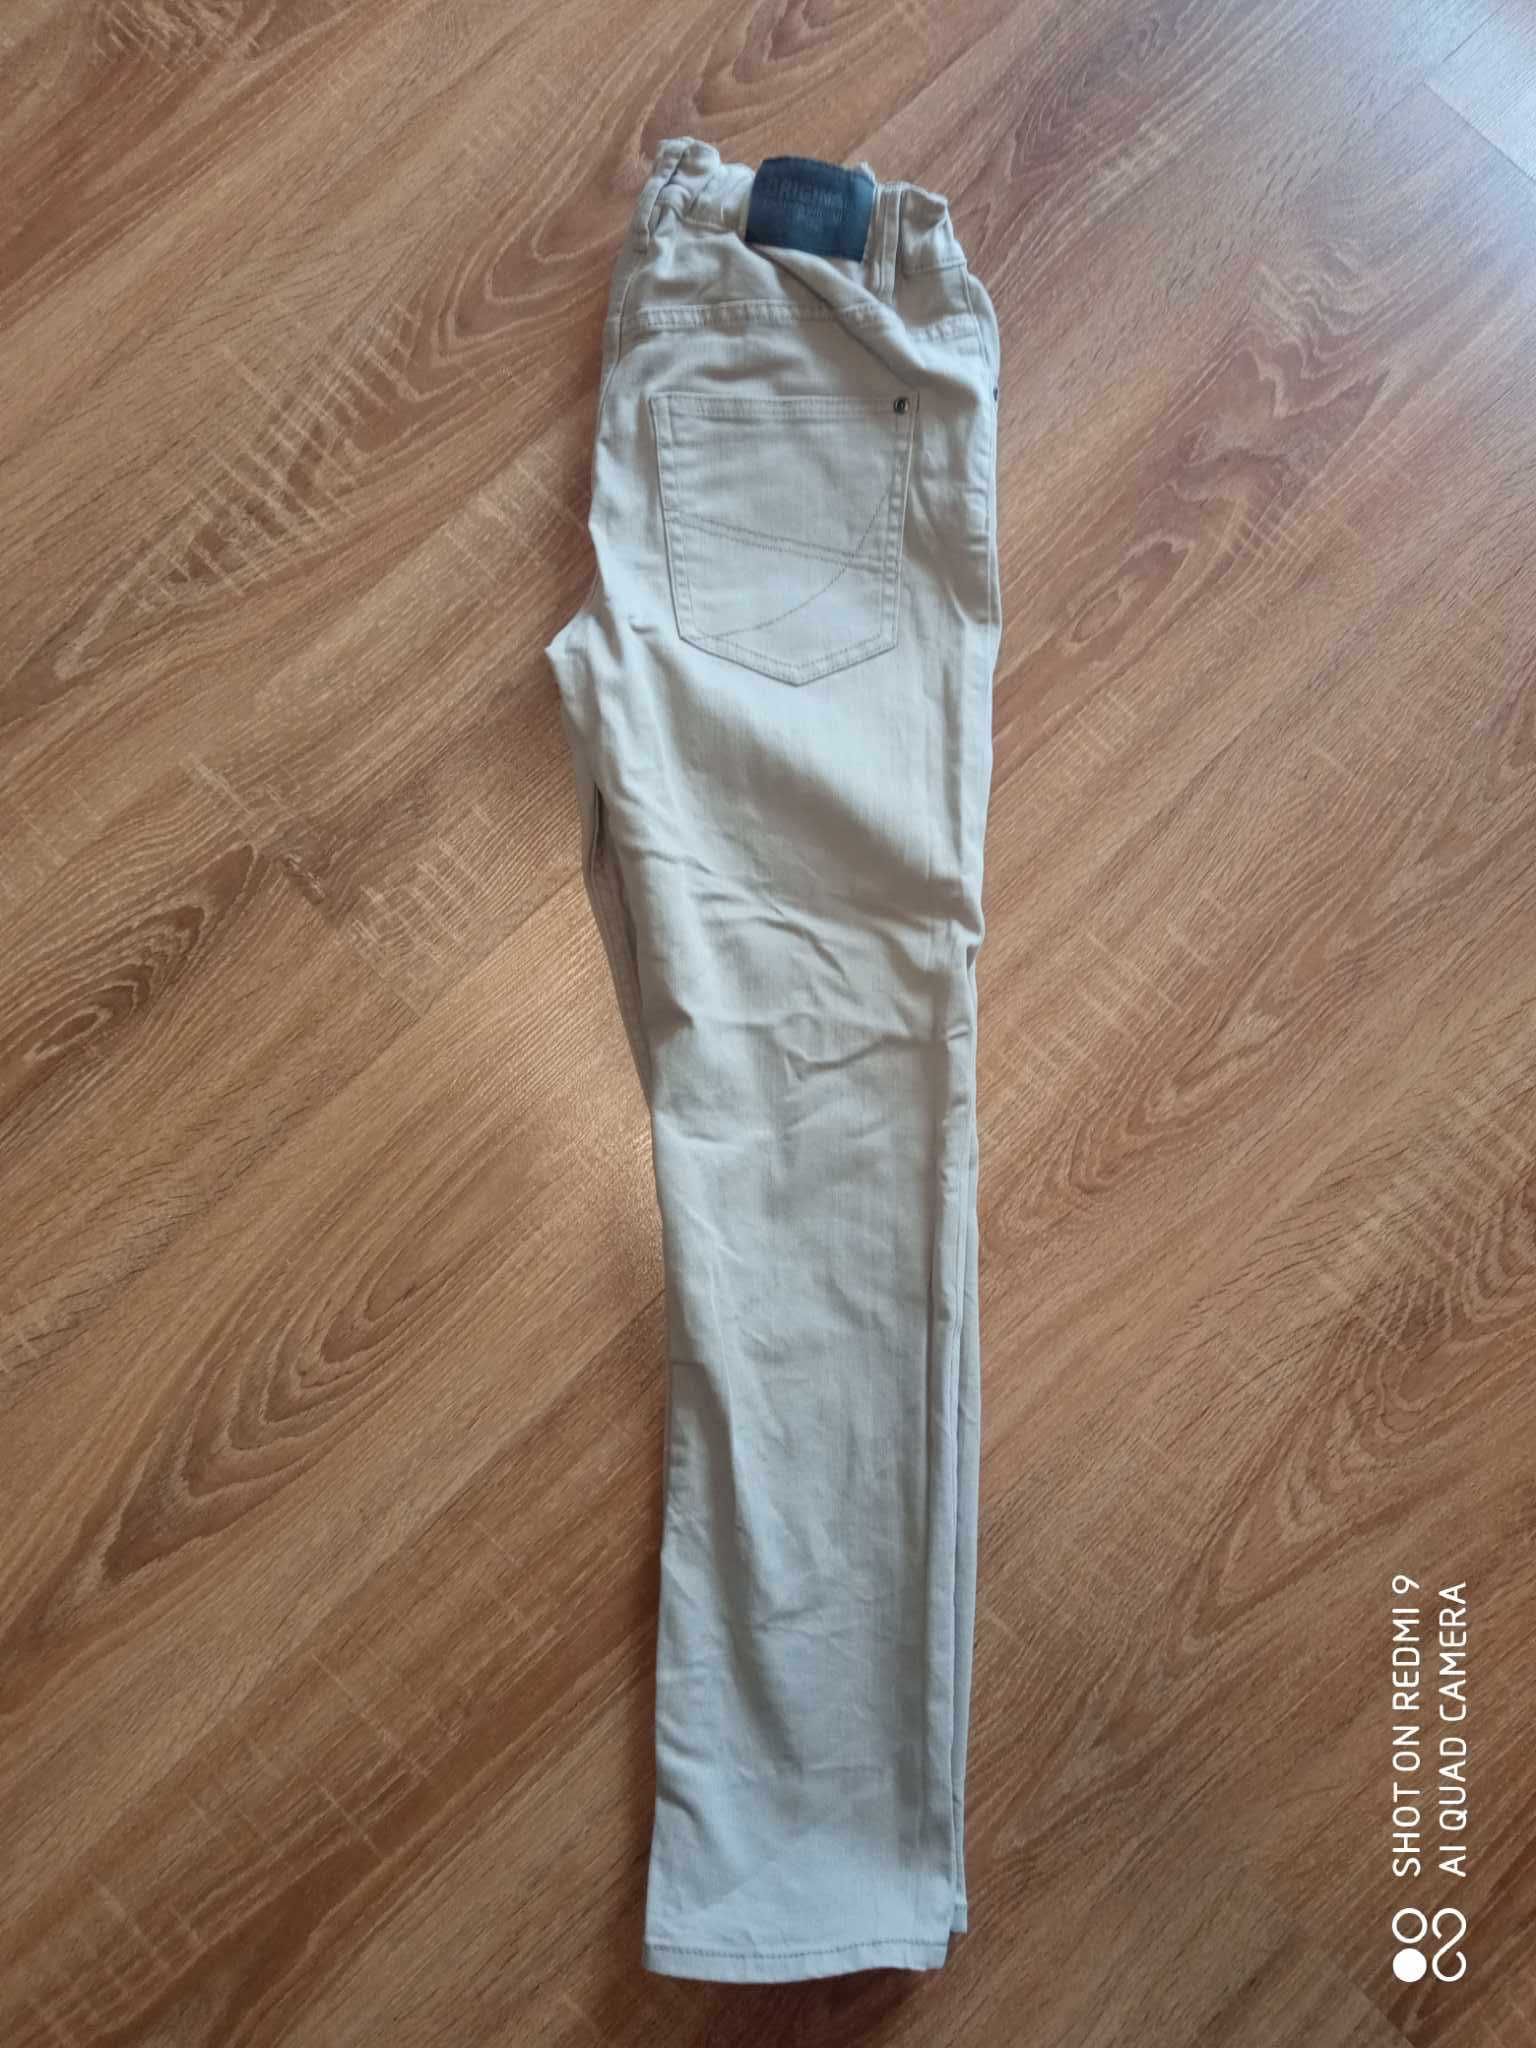 Spodnie chłopięce dla chłopca Skinny 12-13 lat firmy H&M rozmiar 158